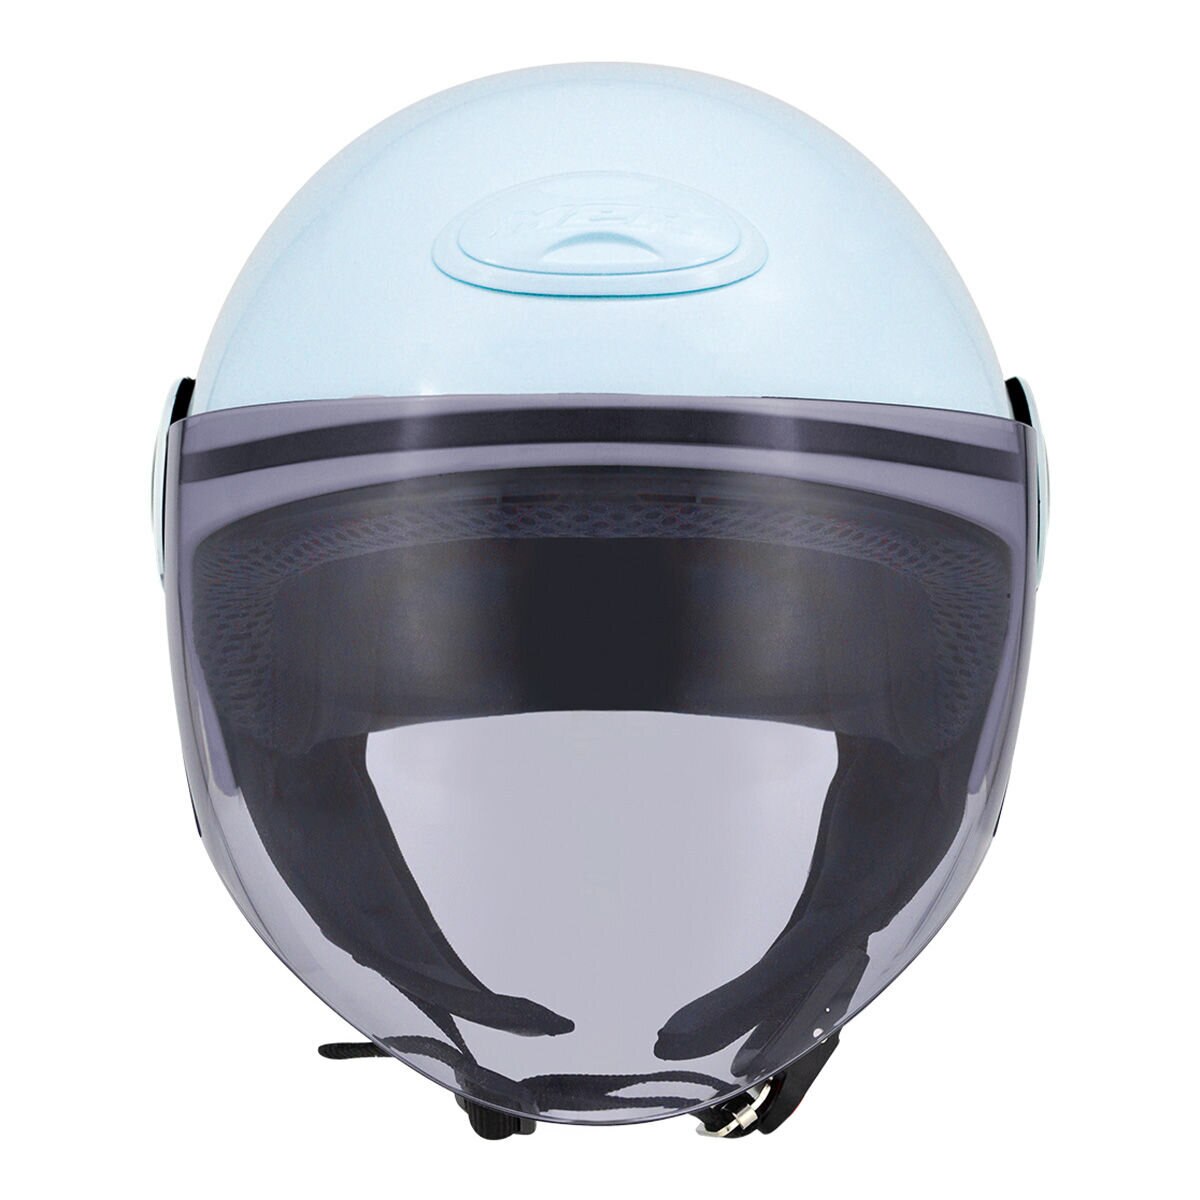 M2R 1/2罩安全帽 騎乘機車用防護頭盔 M-506 亮藍 L